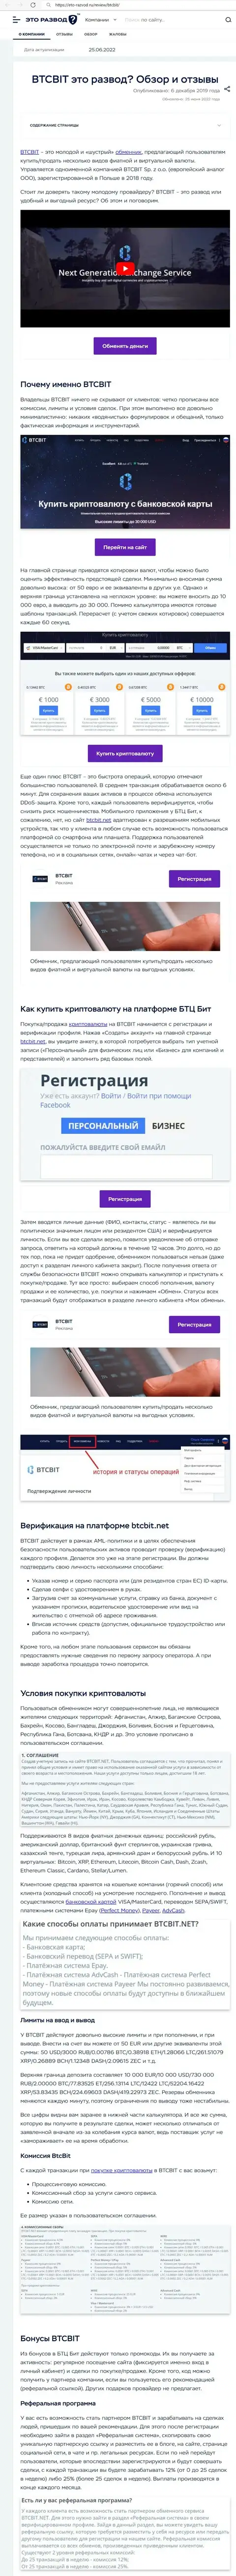 Анализ деятельности и условия сотрудничества онлайн-обменки BTCBIT Sp. z.o.o в обзоре на web-портале eto-razvod ru